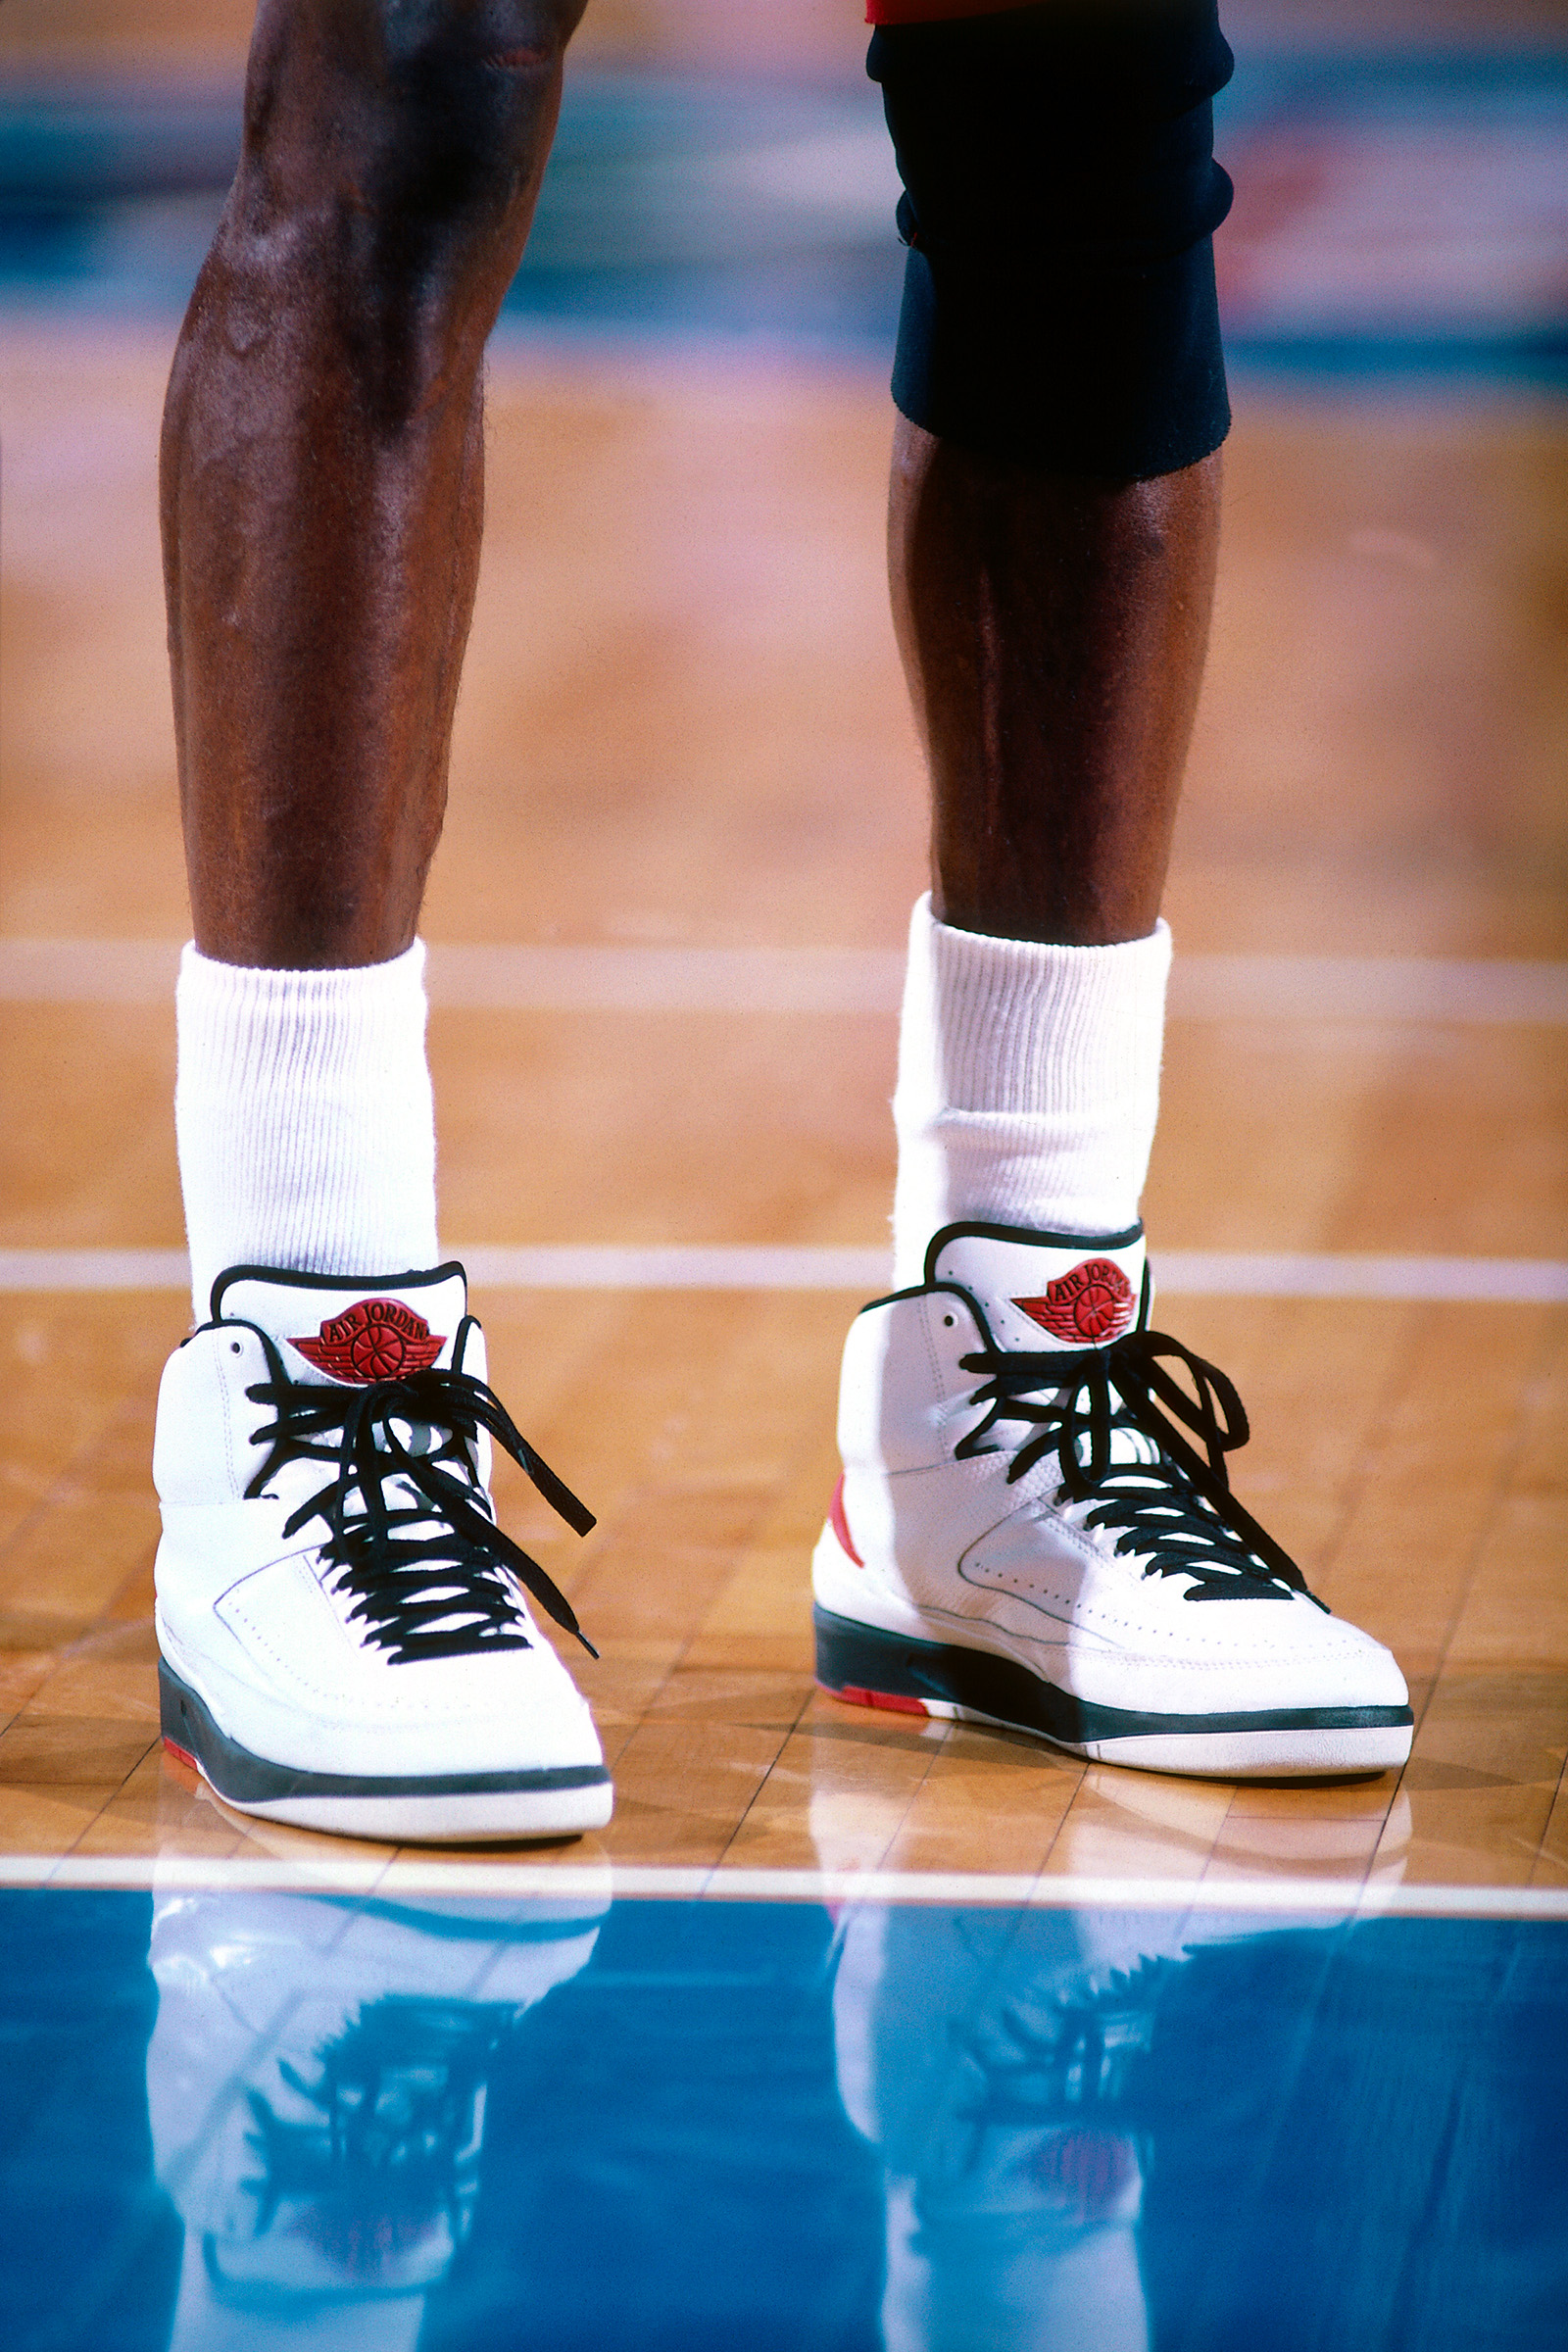 Michael Jordan's sneakers and NBA ban: How celebrity-endorsed